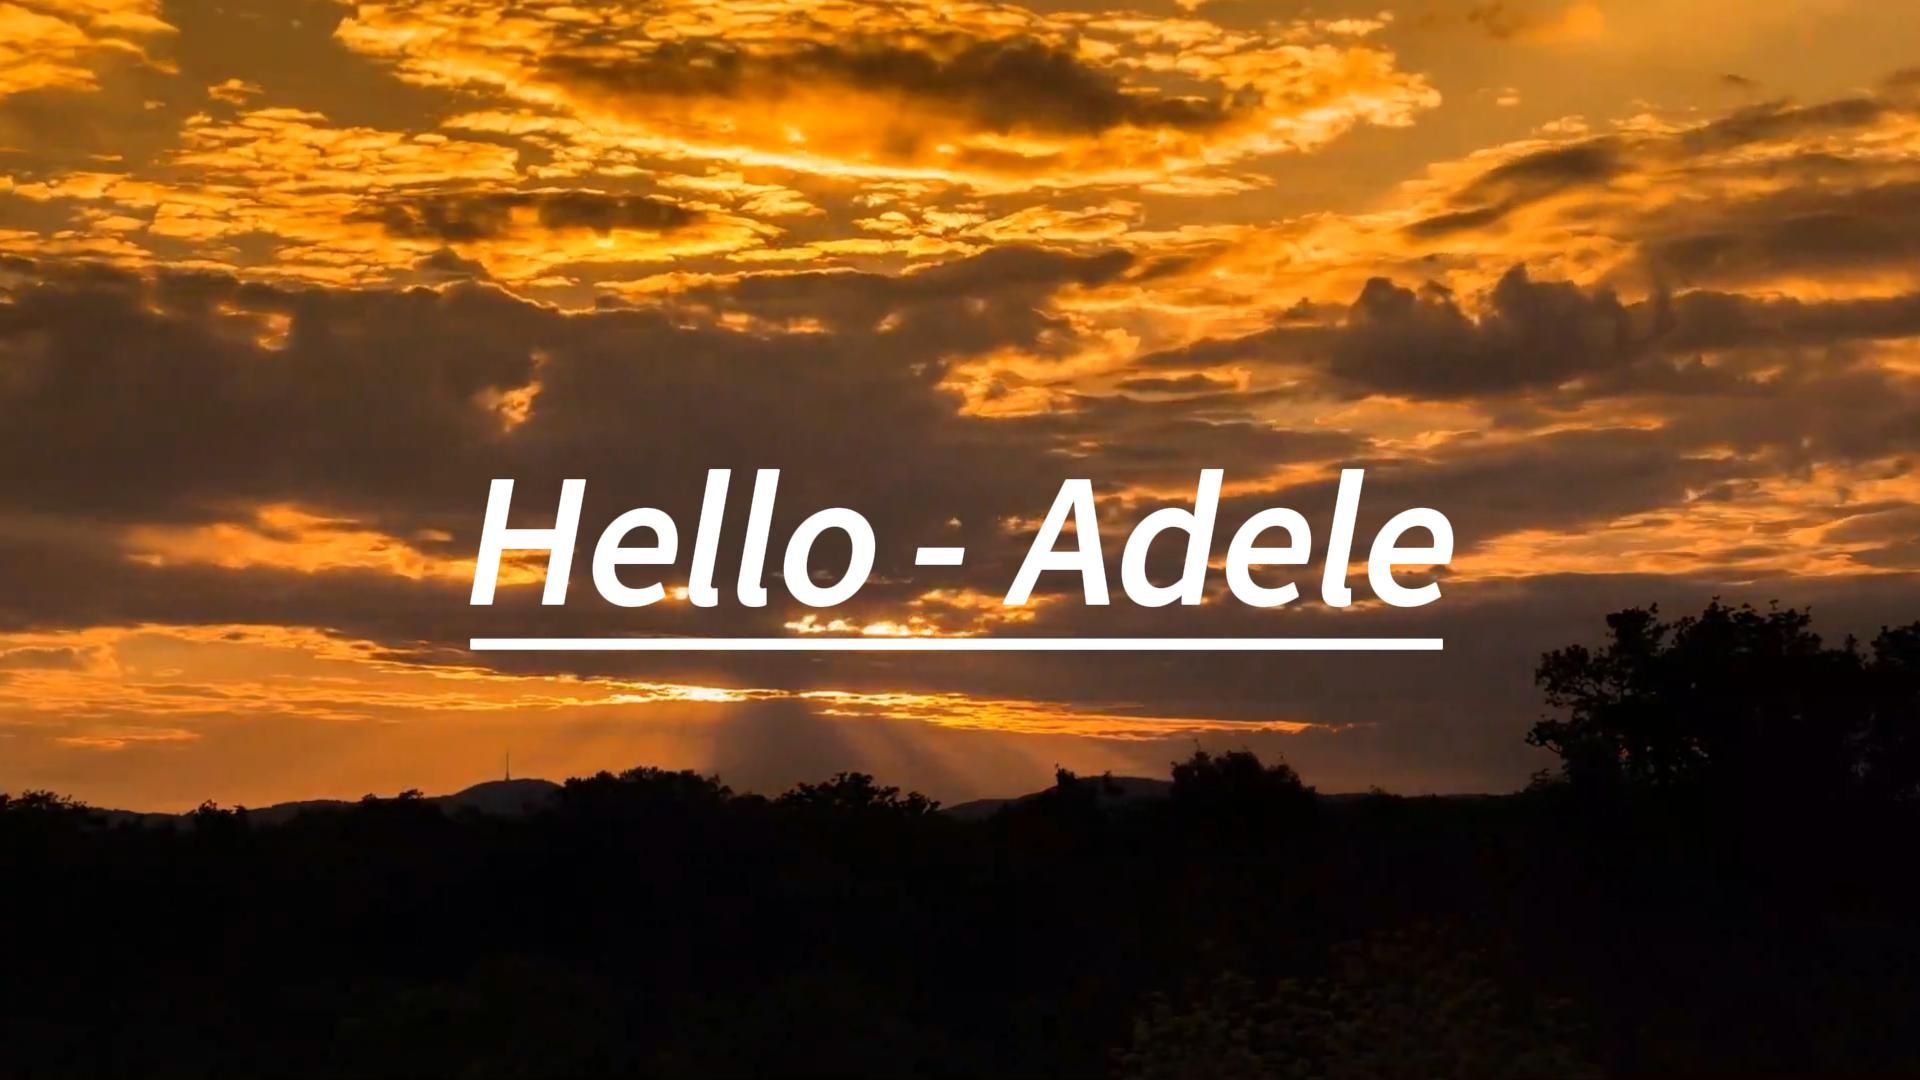 阿黛尔经典曲目《Hello》 - Adele